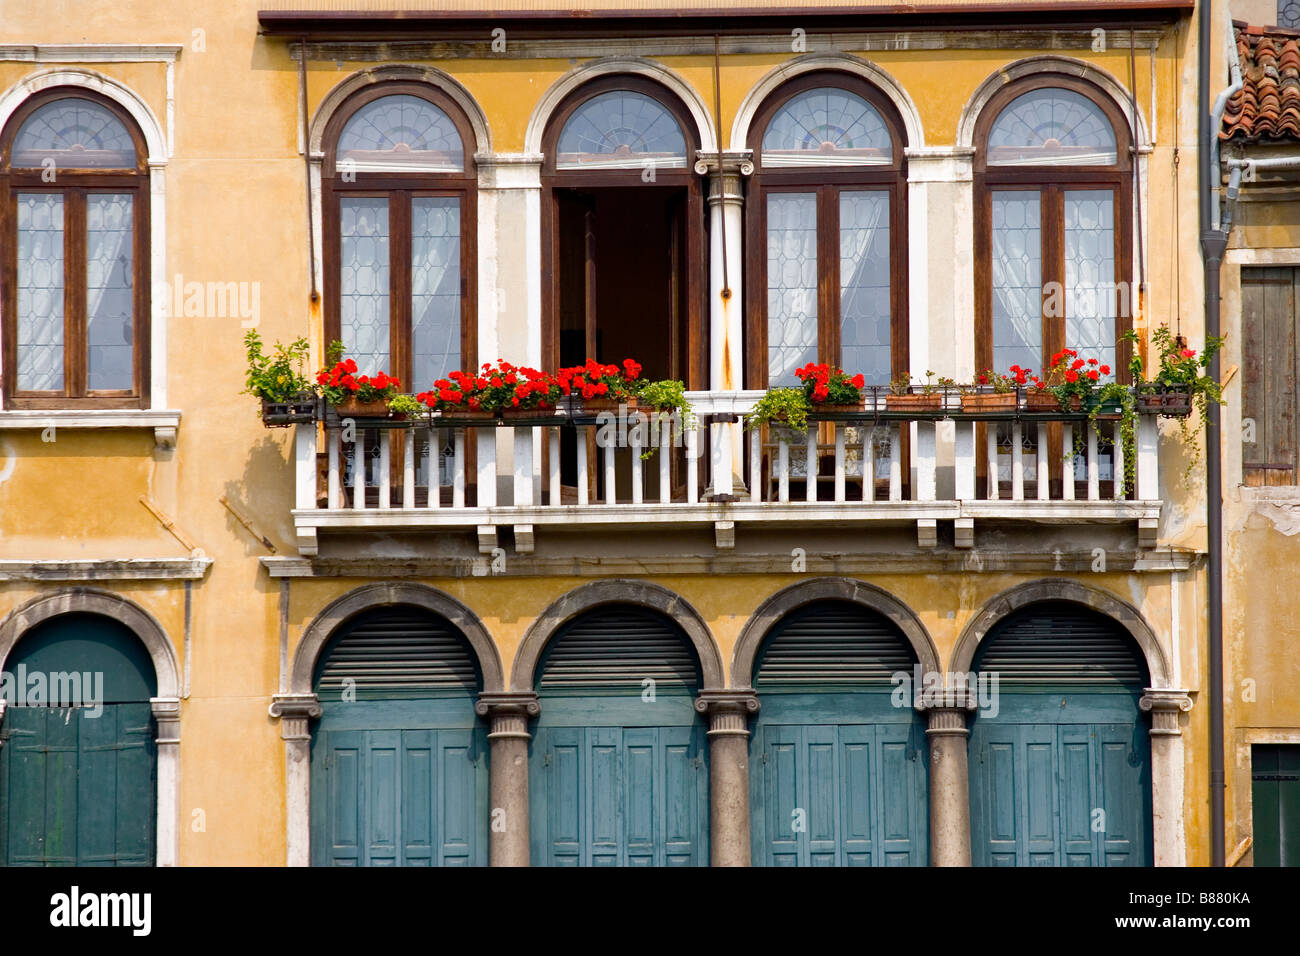 Les jardinières sur un balcon d'une maison à Venise Italie Banque D'Images